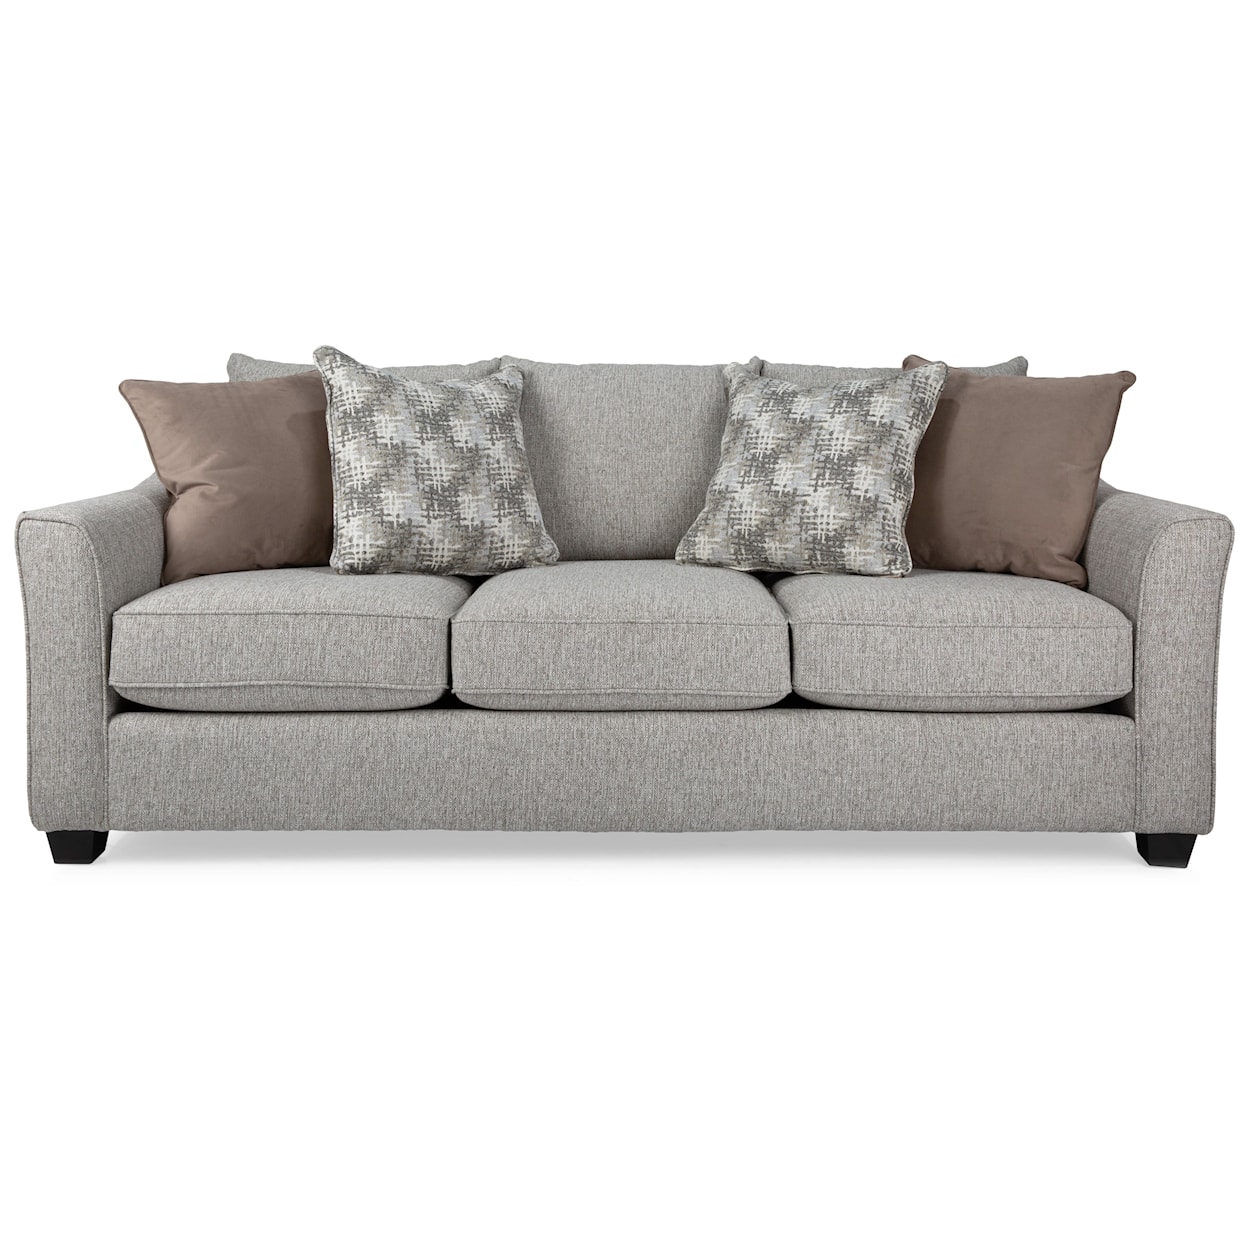 Decor-Rest 2387 Contemporary Sofa